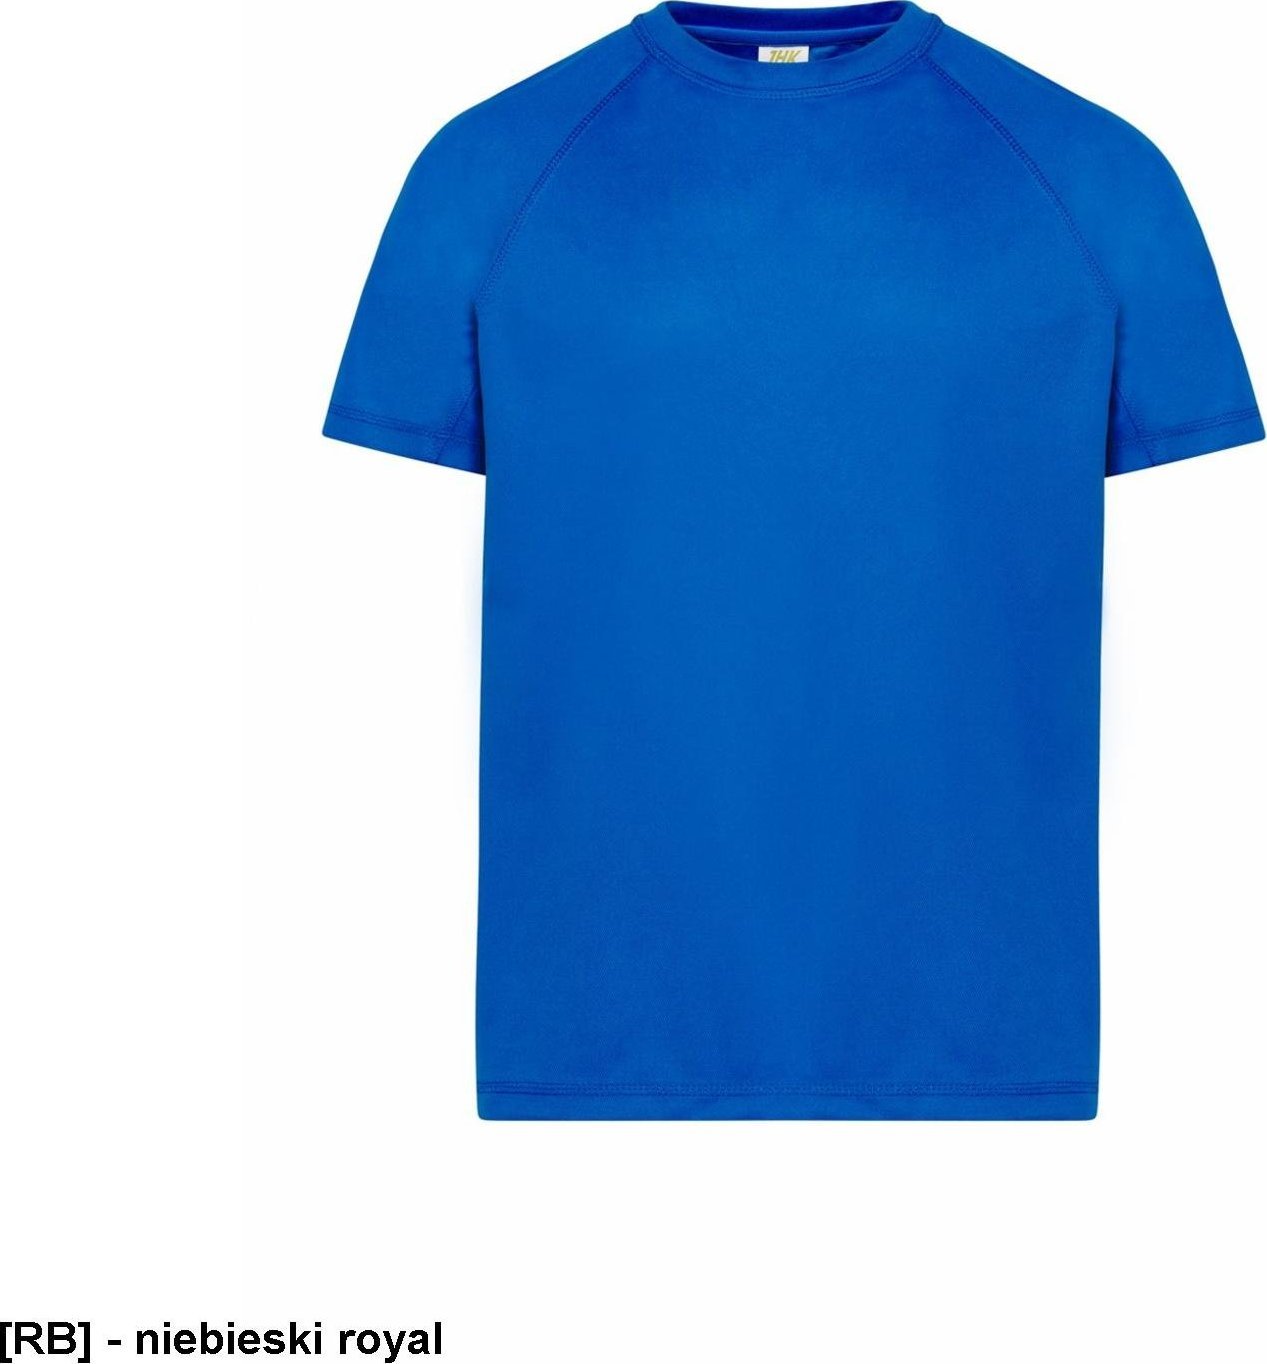 JHK TSRKSPOR SPORT KID - T-shirt dziecięcy z krótkim rękawem - niebieski royal - wzrost 110-152cm. 3...